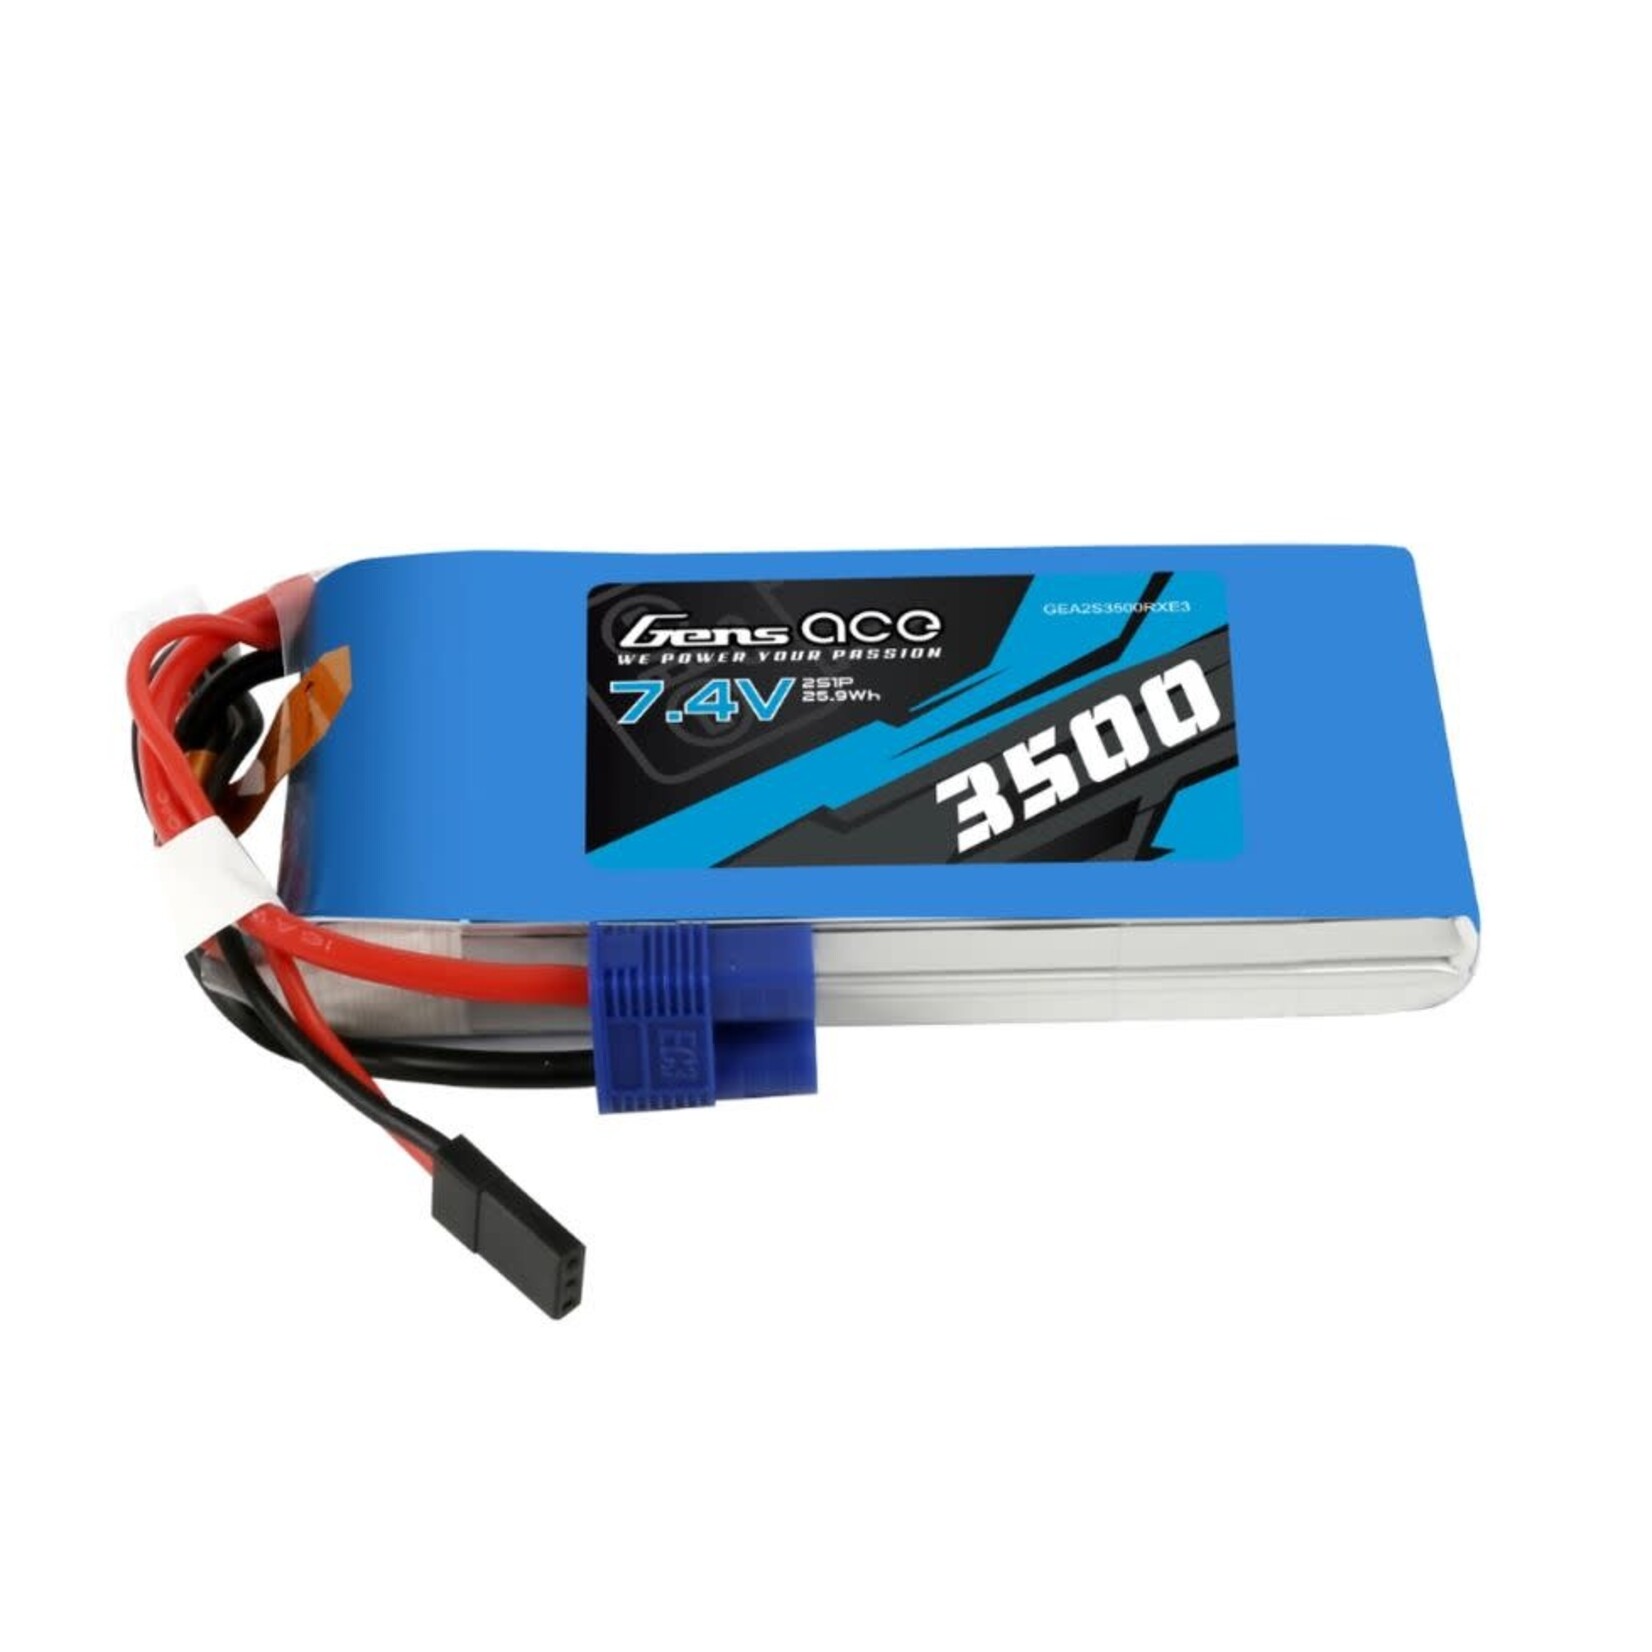 Gens Ace 7.4V 3500mAh 2S Receiver LiPo  Soft Case with EC3